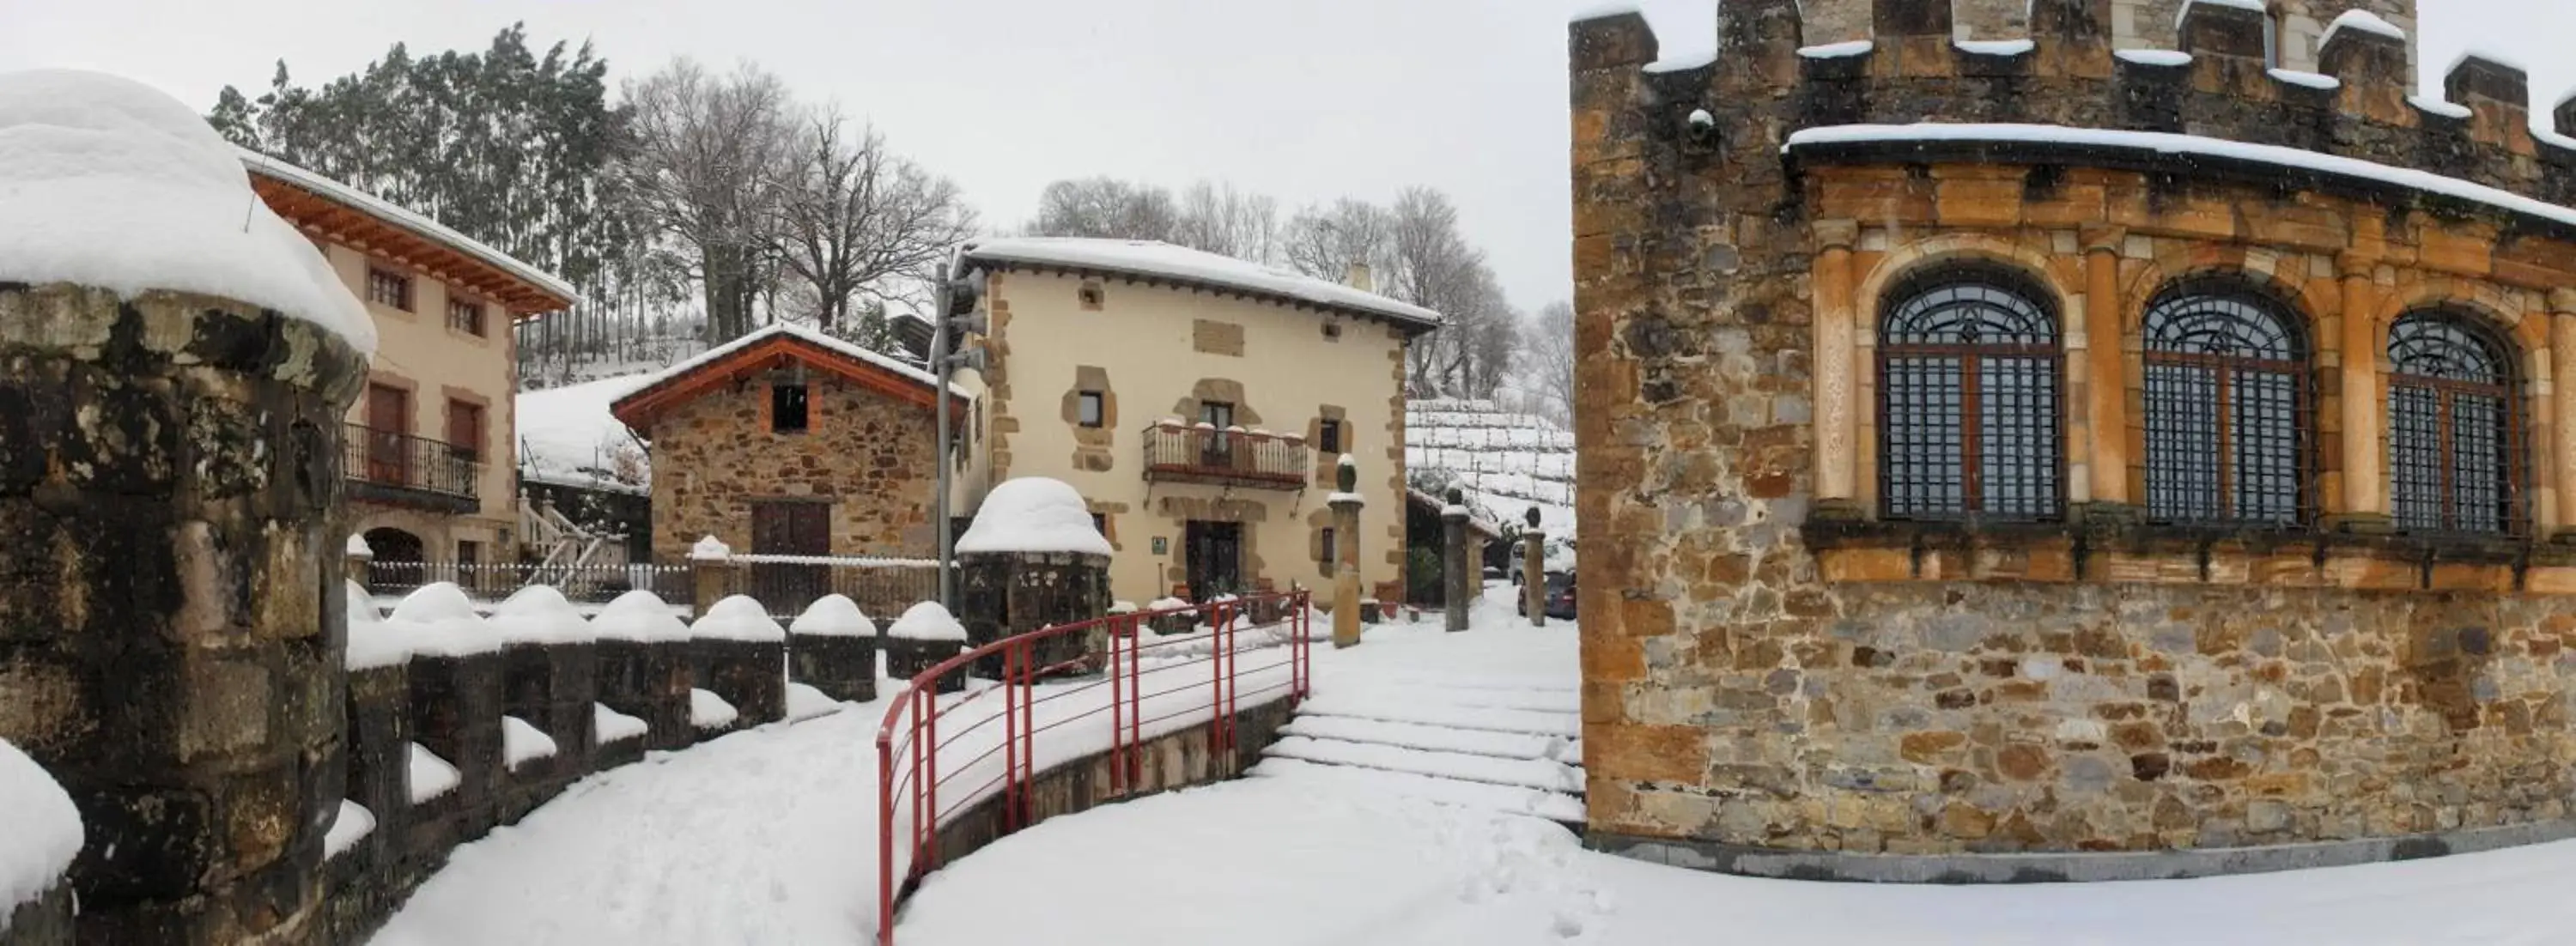 Facade/entrance, Winter in Batzarki